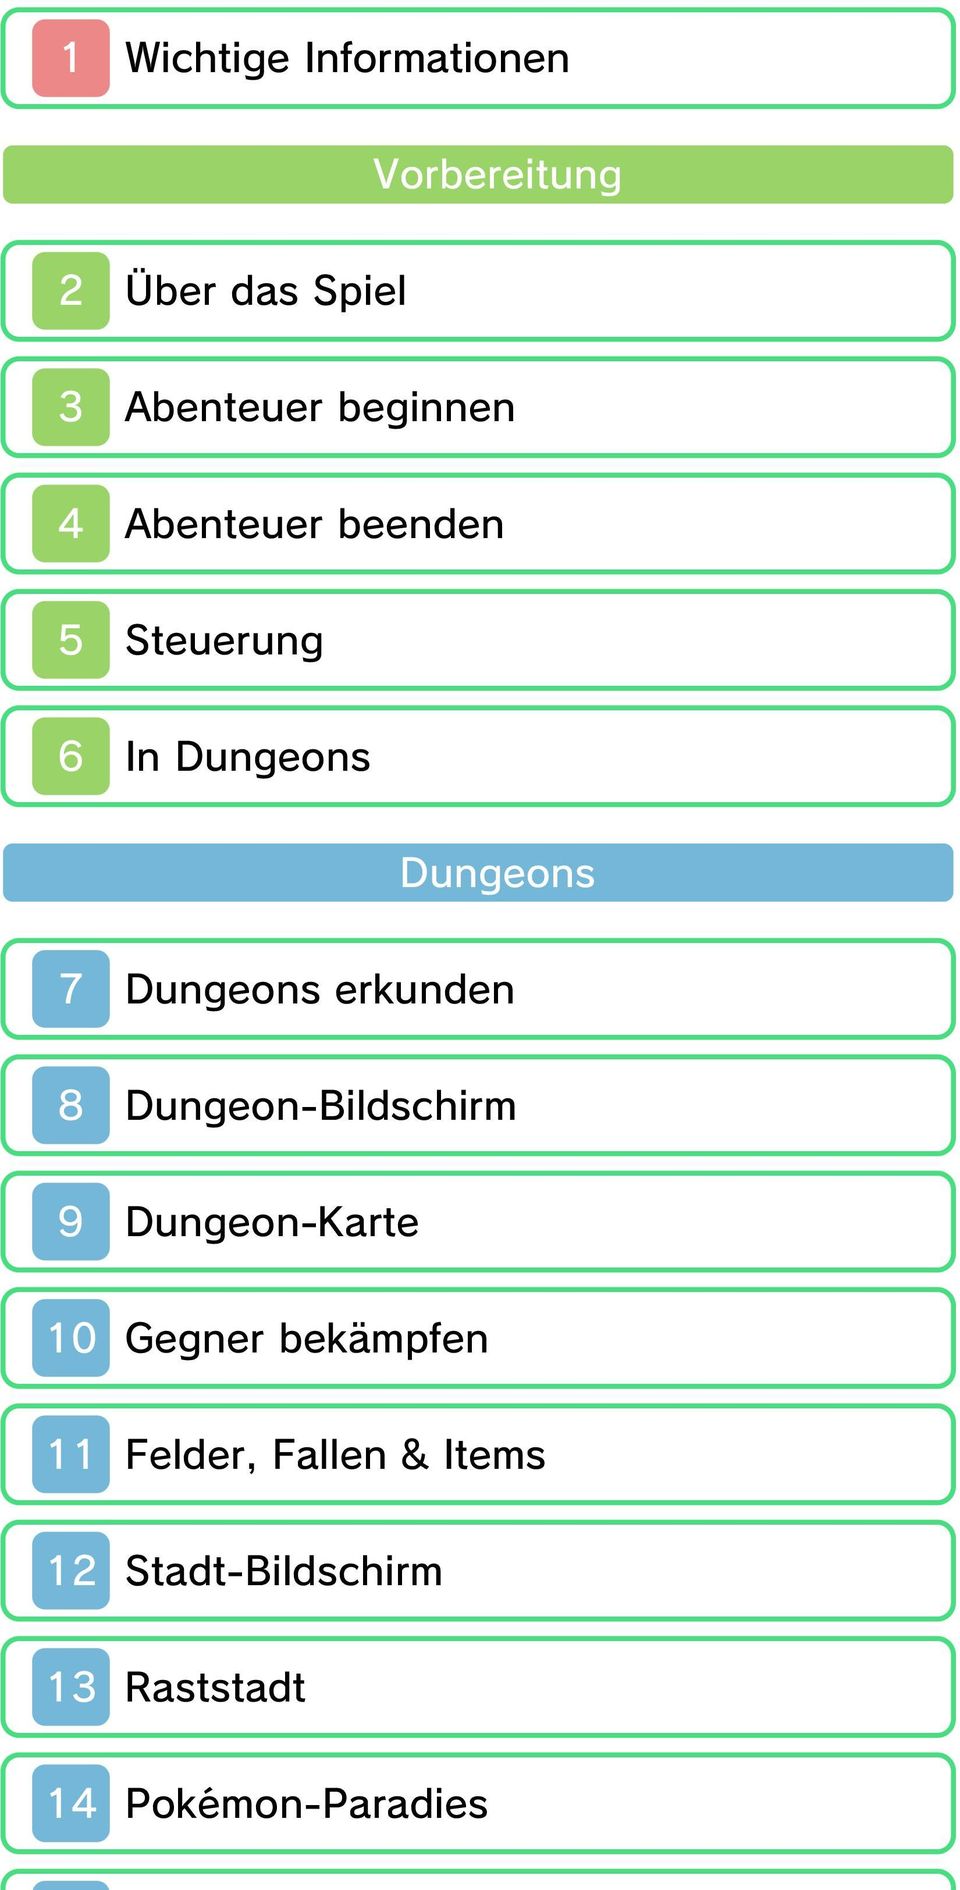 Dungeons erkunden 8 Dungeon-Bildschirm 9 Dungeon-Karte 10 Gegner